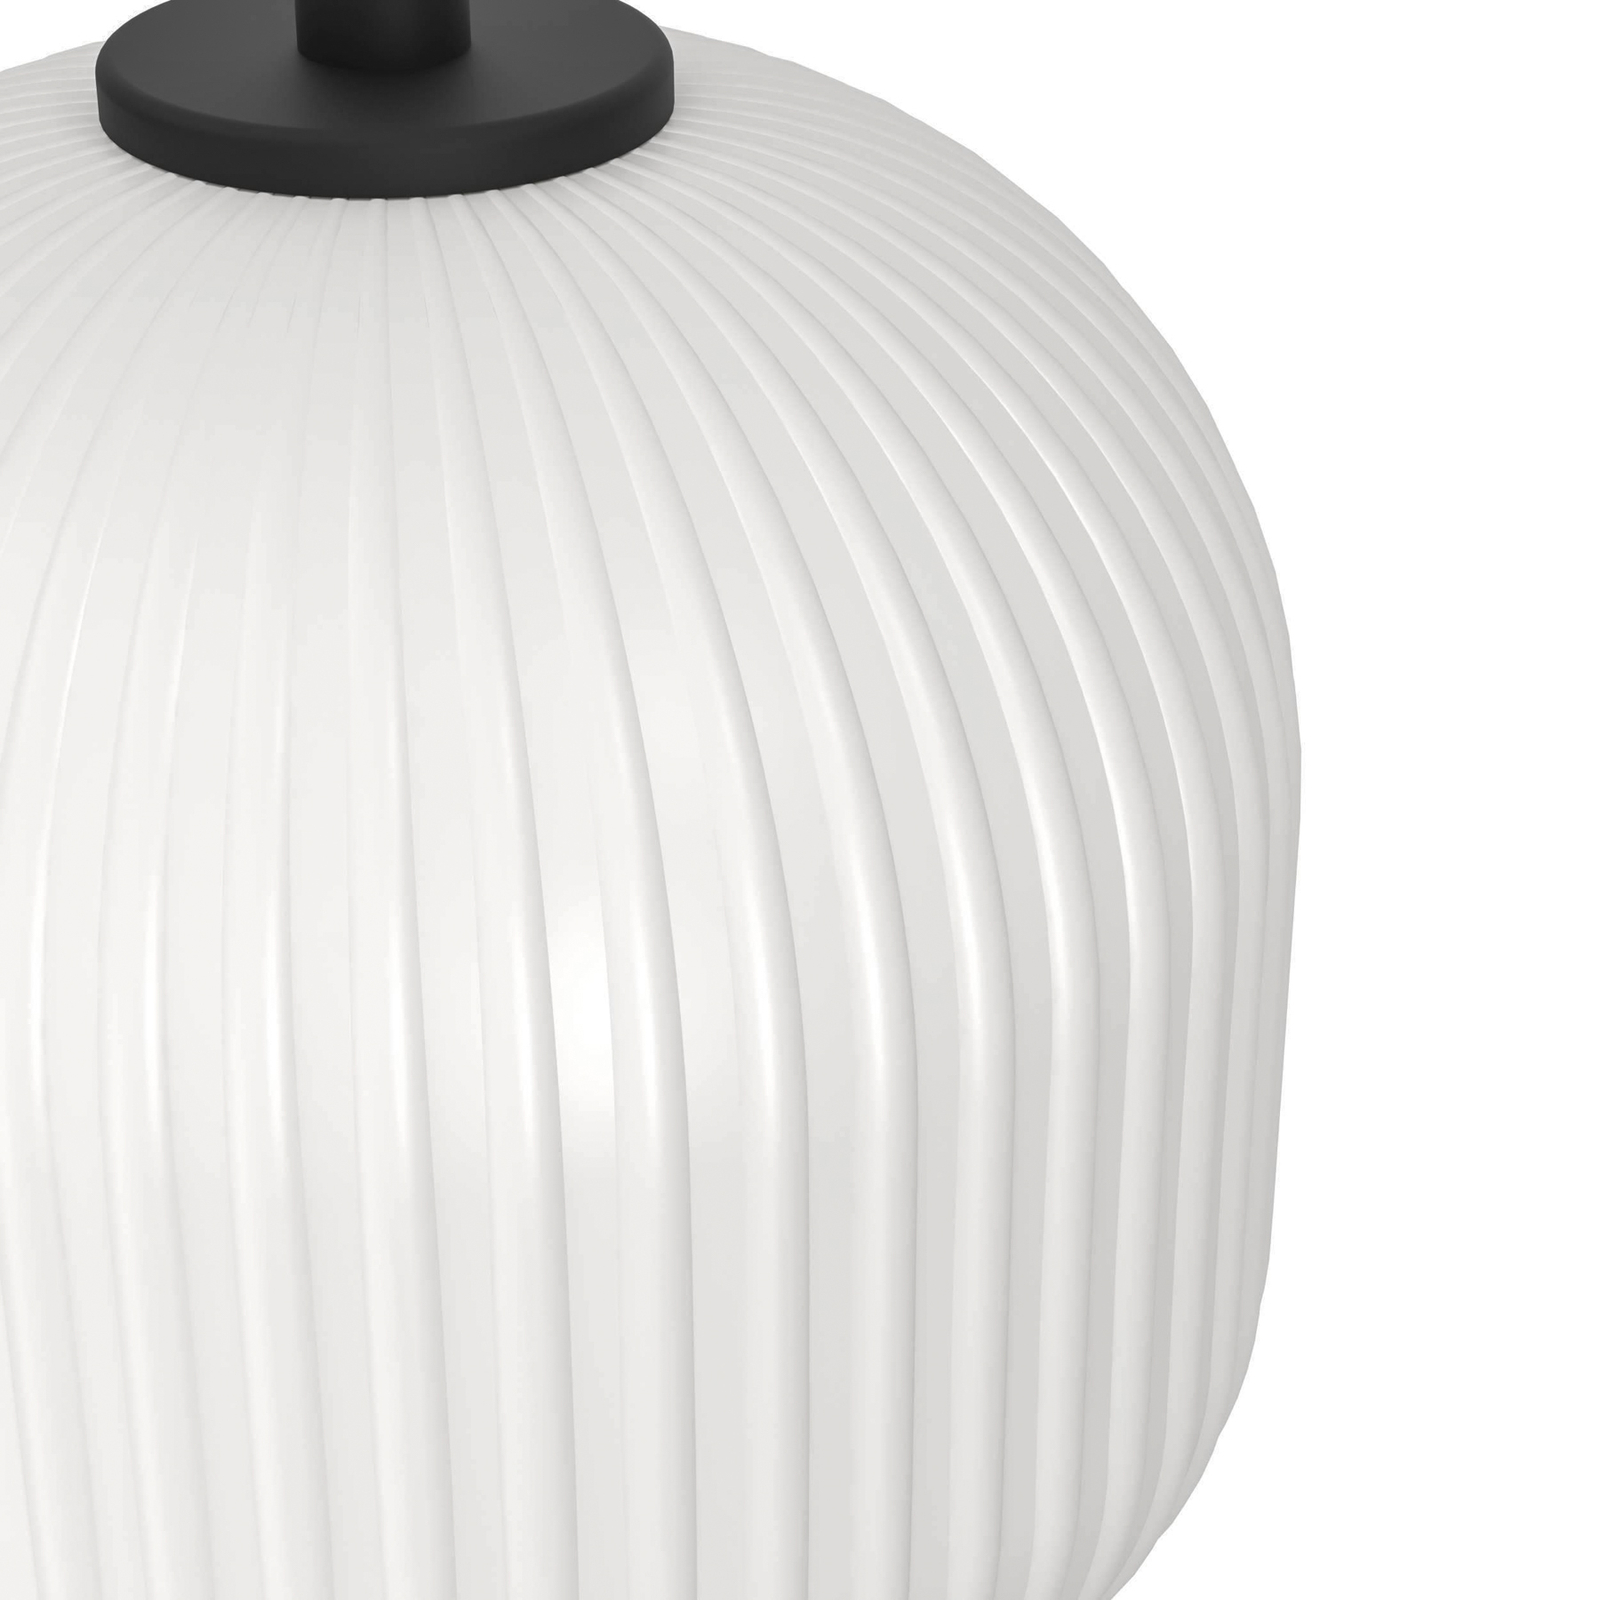 Mantunalle hængelampe, længde 120 cm, sort/hvid, 3 lyskilder.